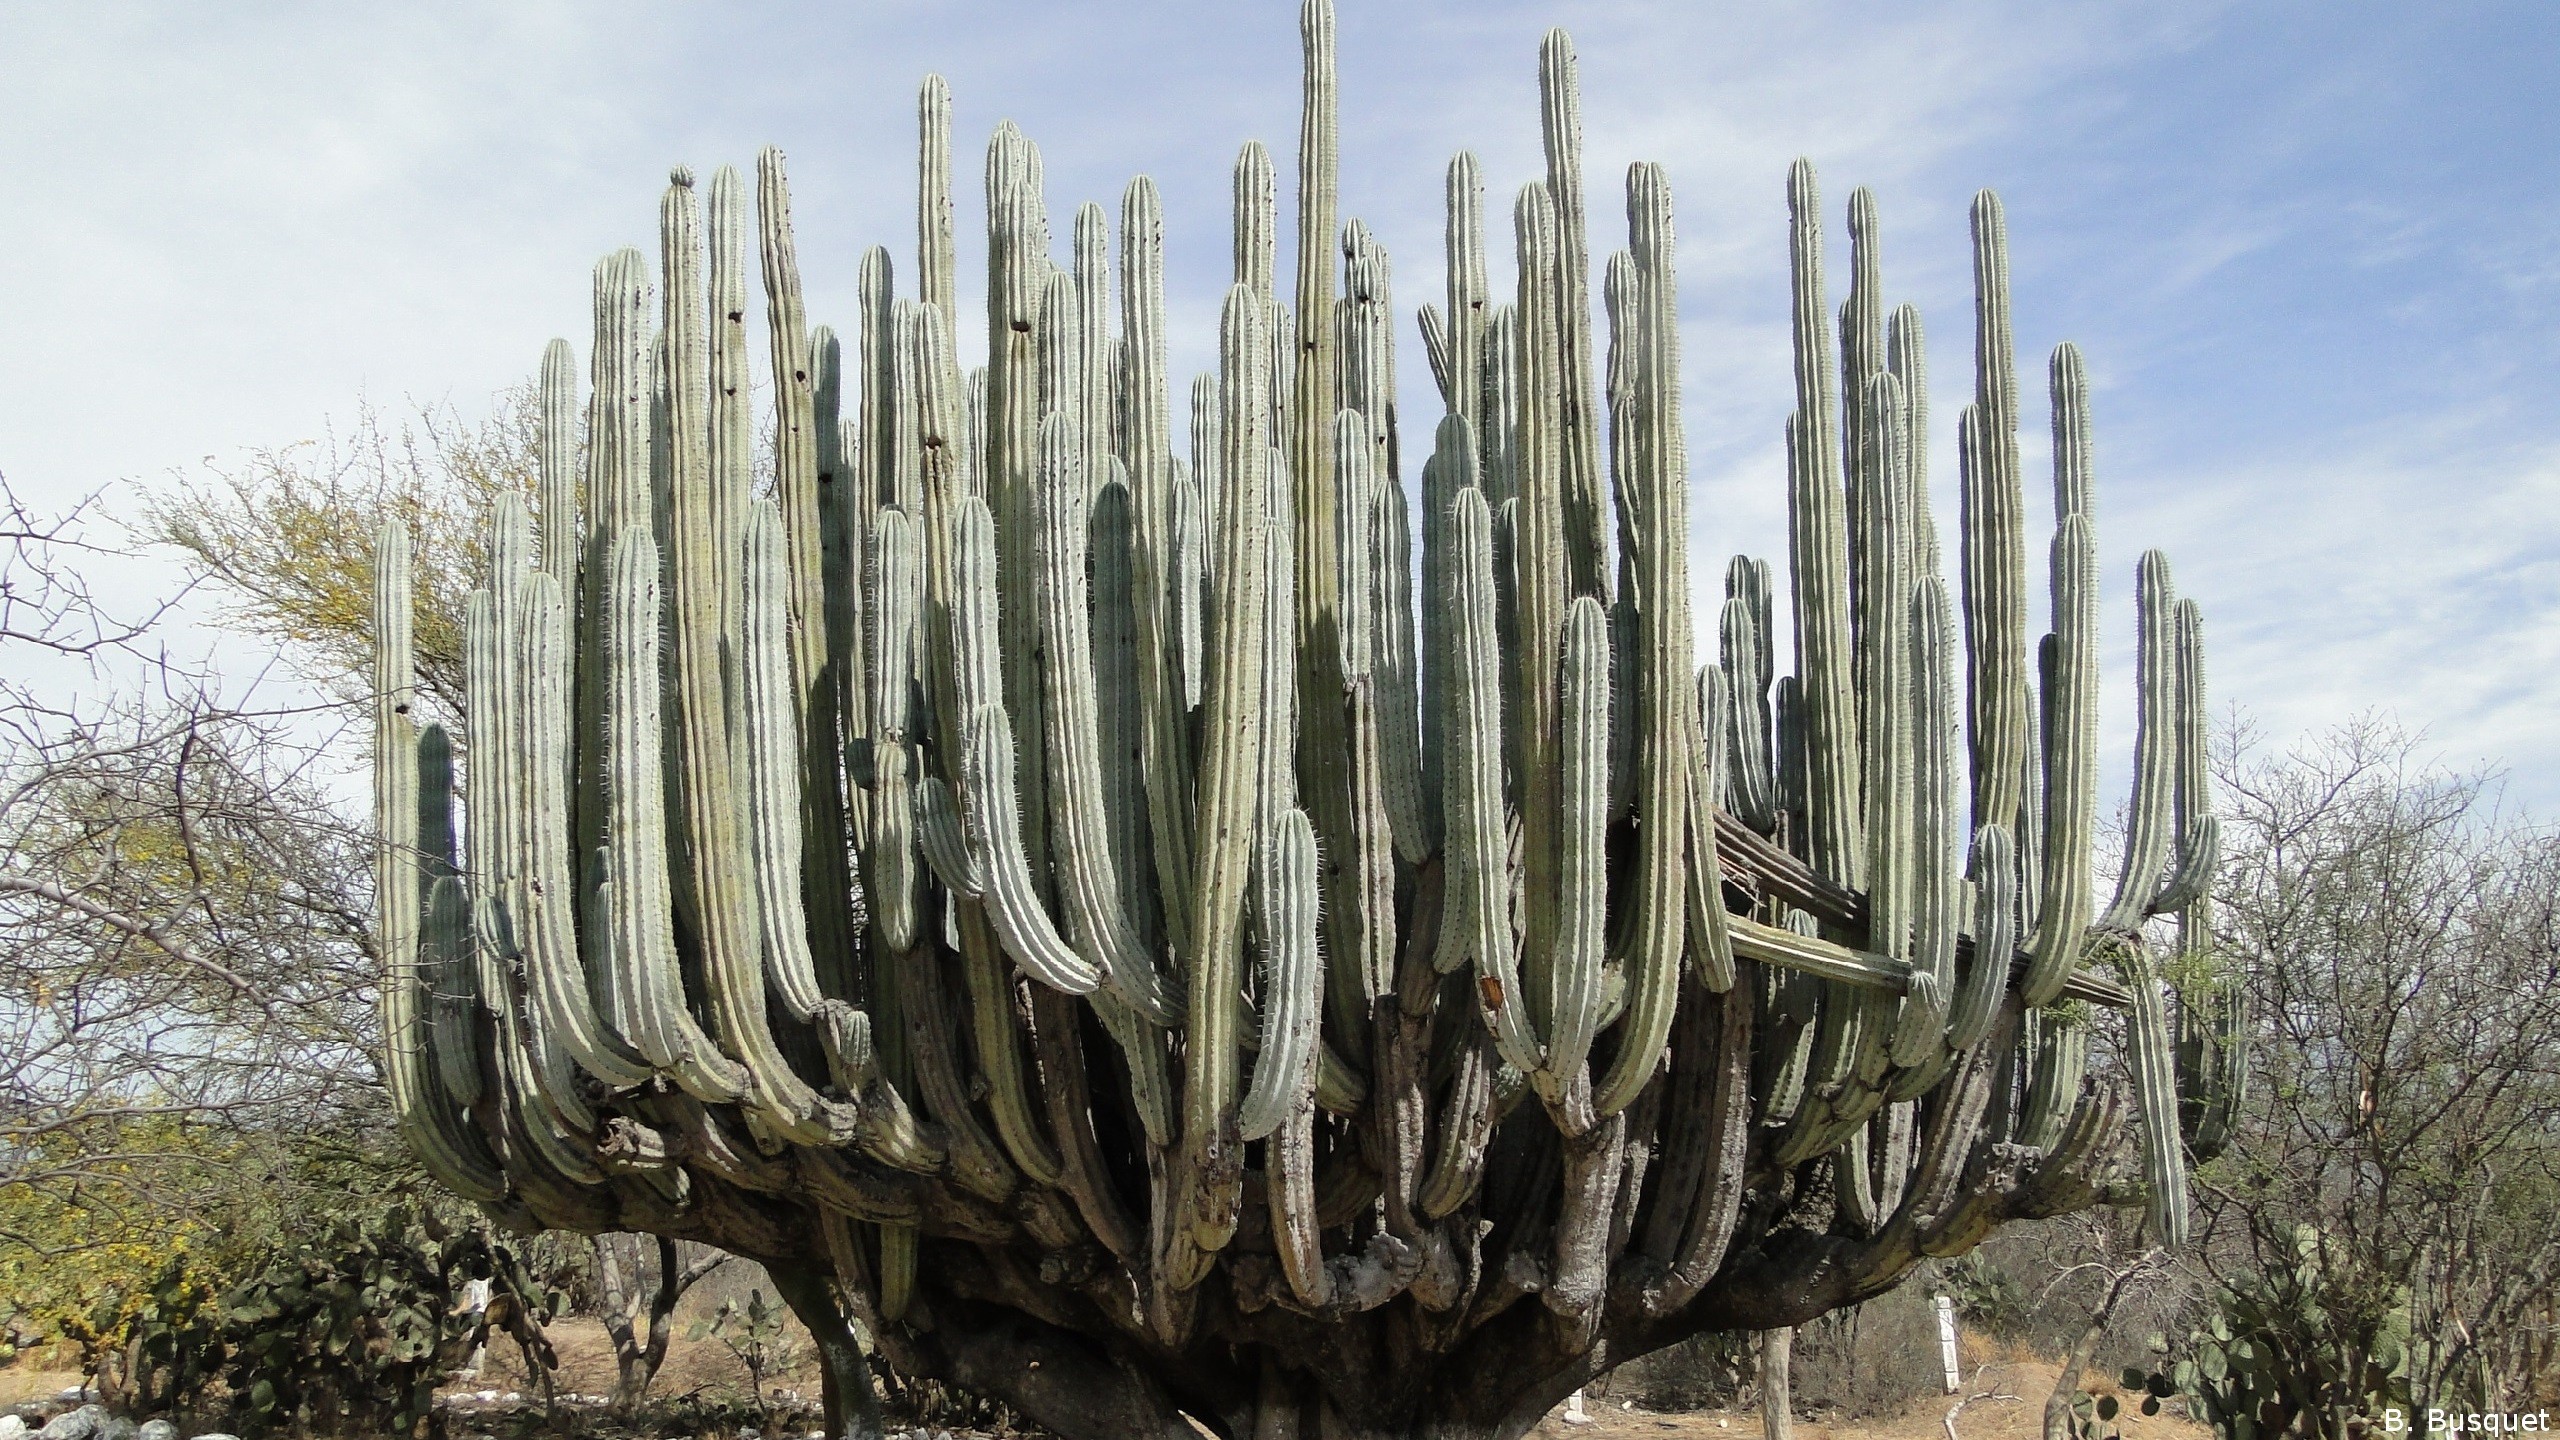 2560x1440 Huge cactus in the desert